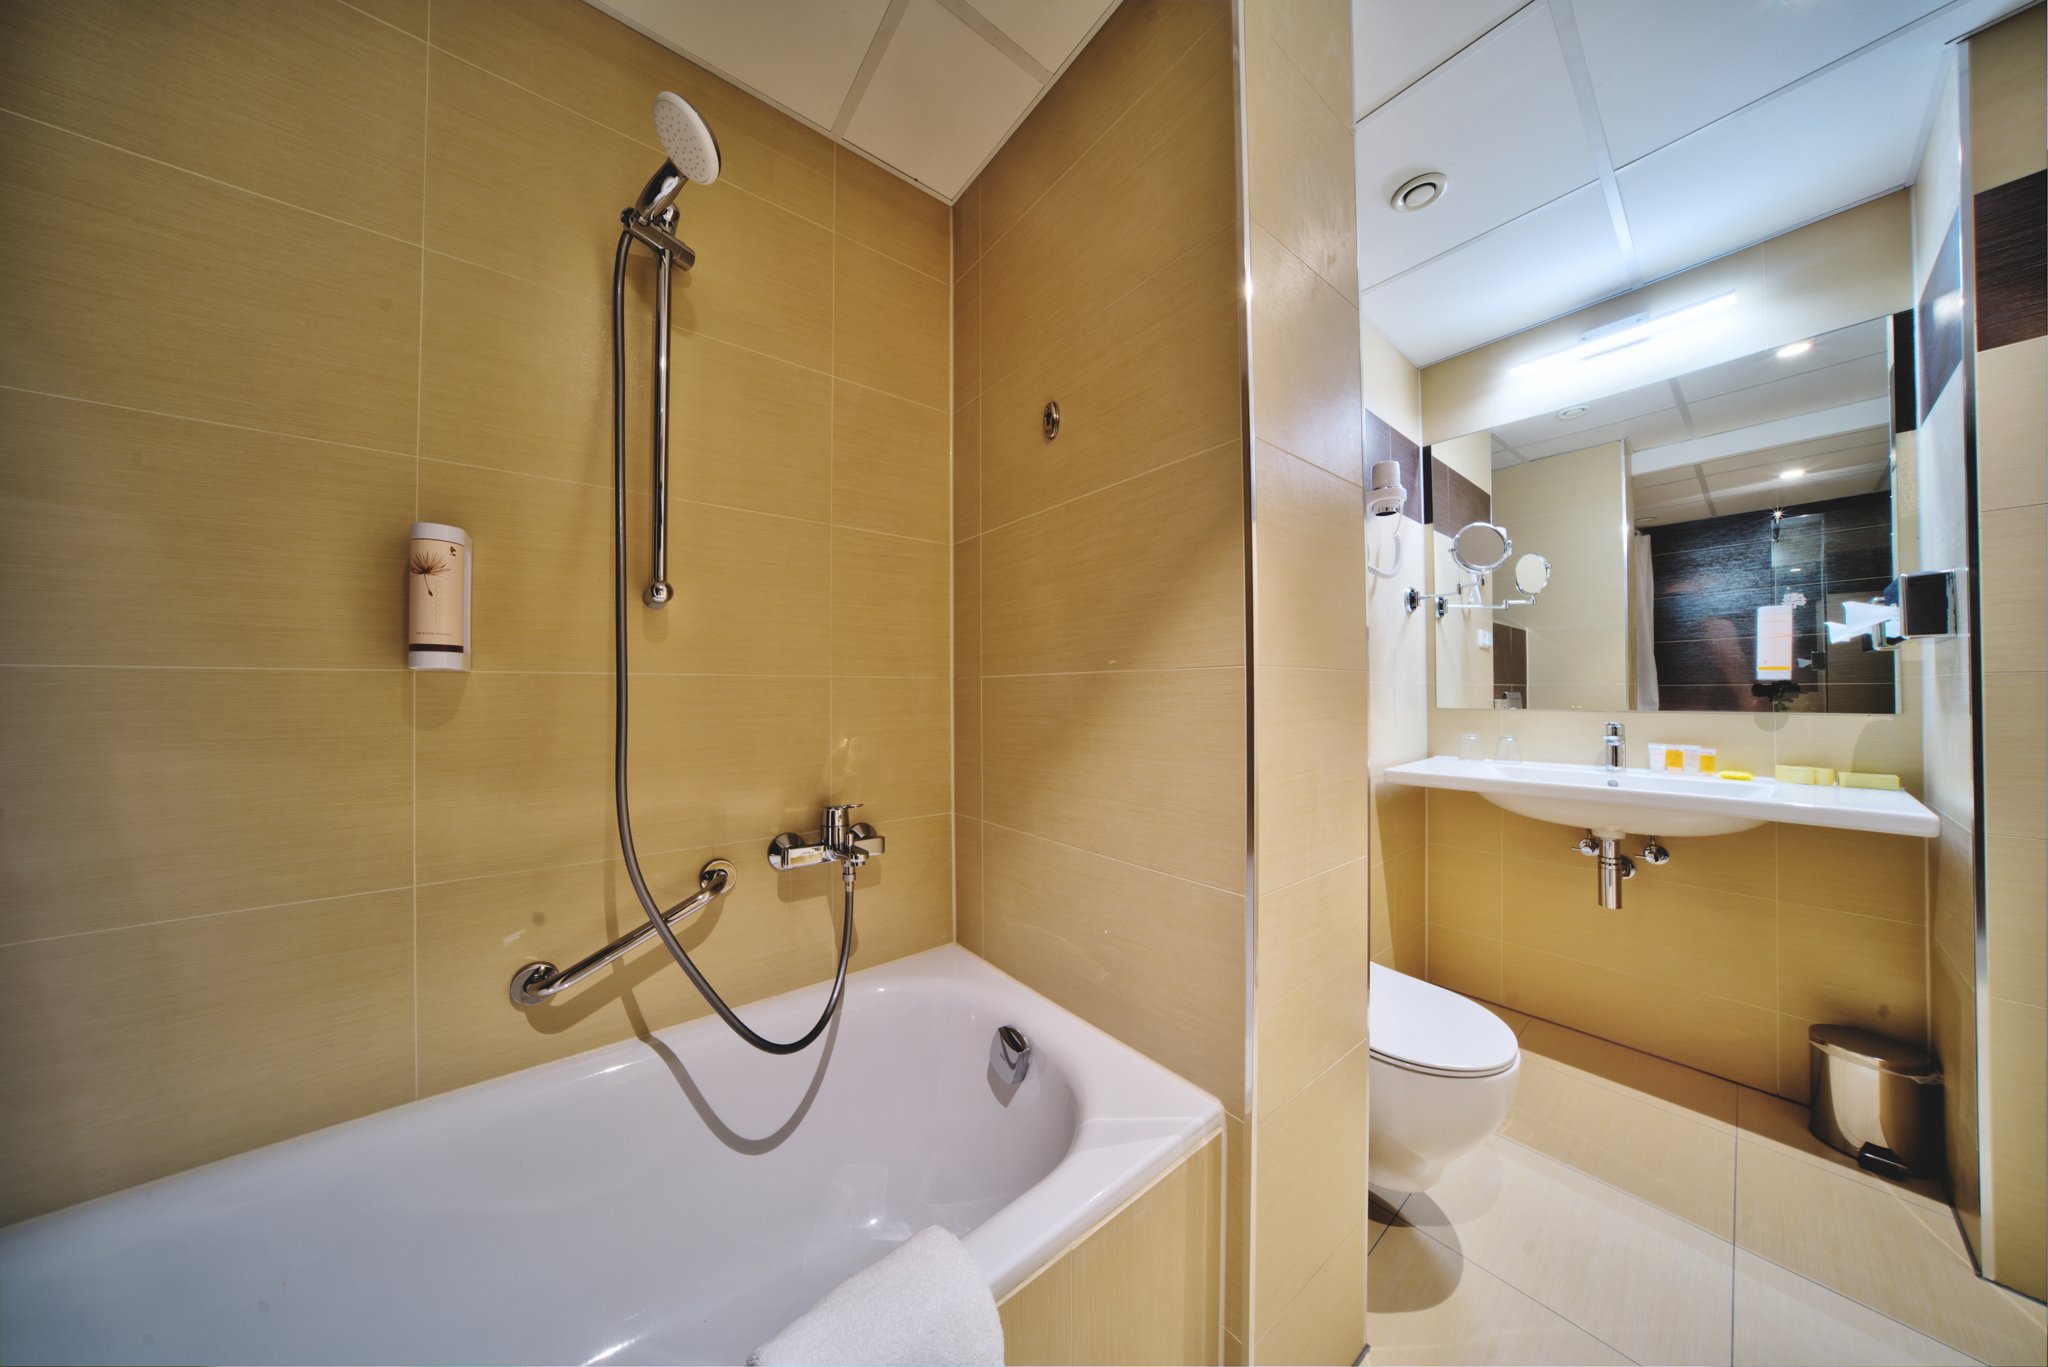 Hotel Thermal - modernizace hotelového komplexu - Hnědá koupelna